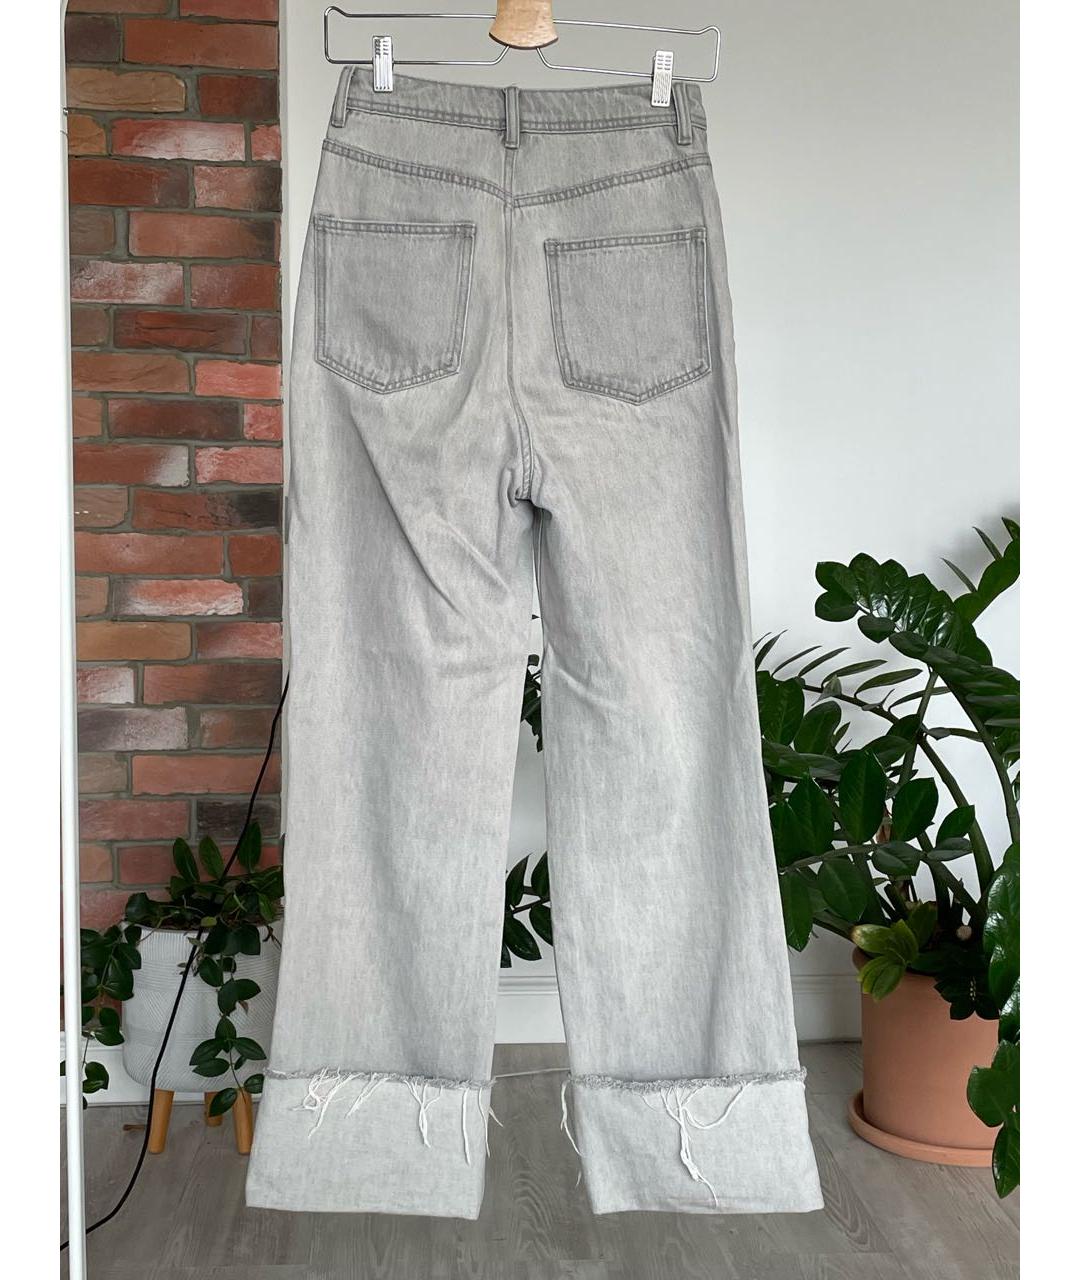 12 STOREEZ Серые хлопковые прямые джинсы, фото 2